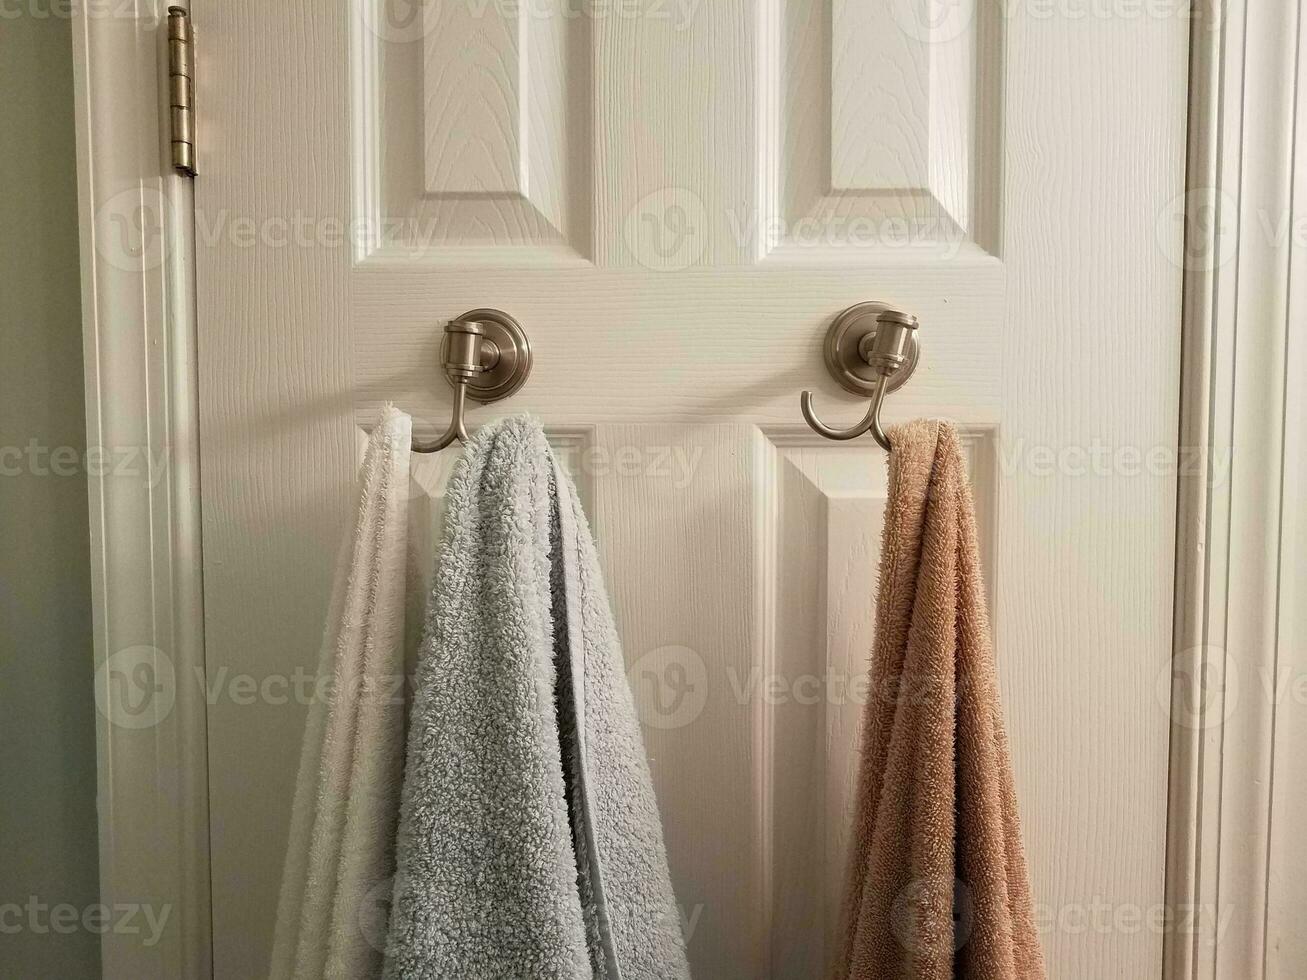 serviettes suspendues à des crochets sur la porte de la salle de bain blanche photo